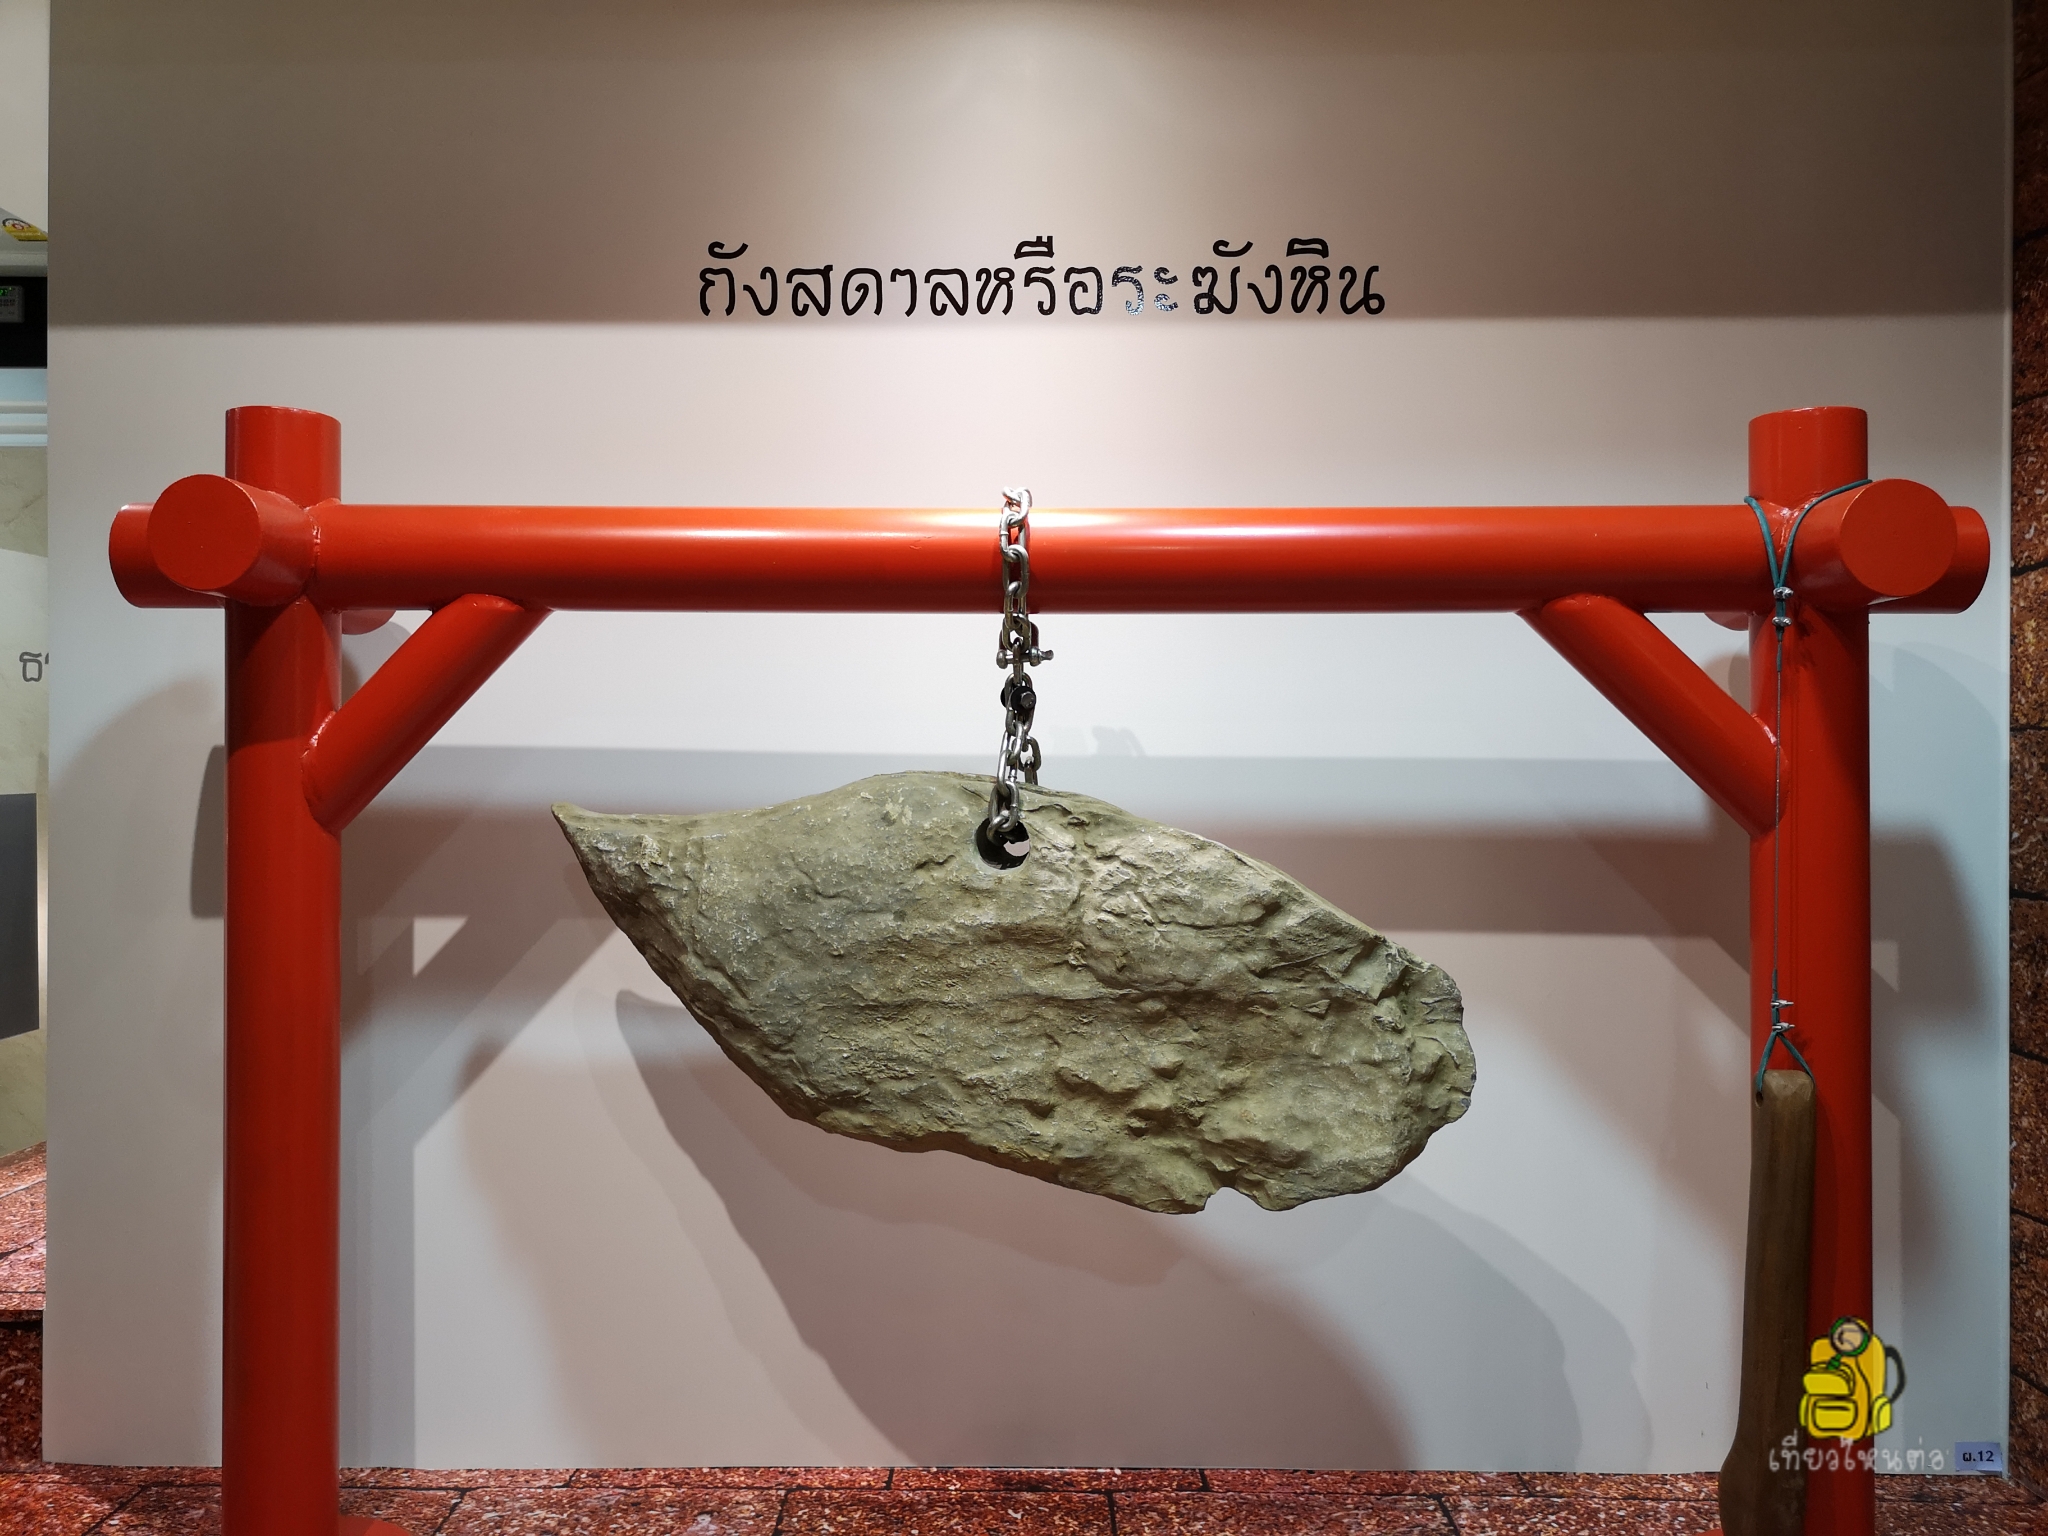 Ban Khu Muang Ancient Remains